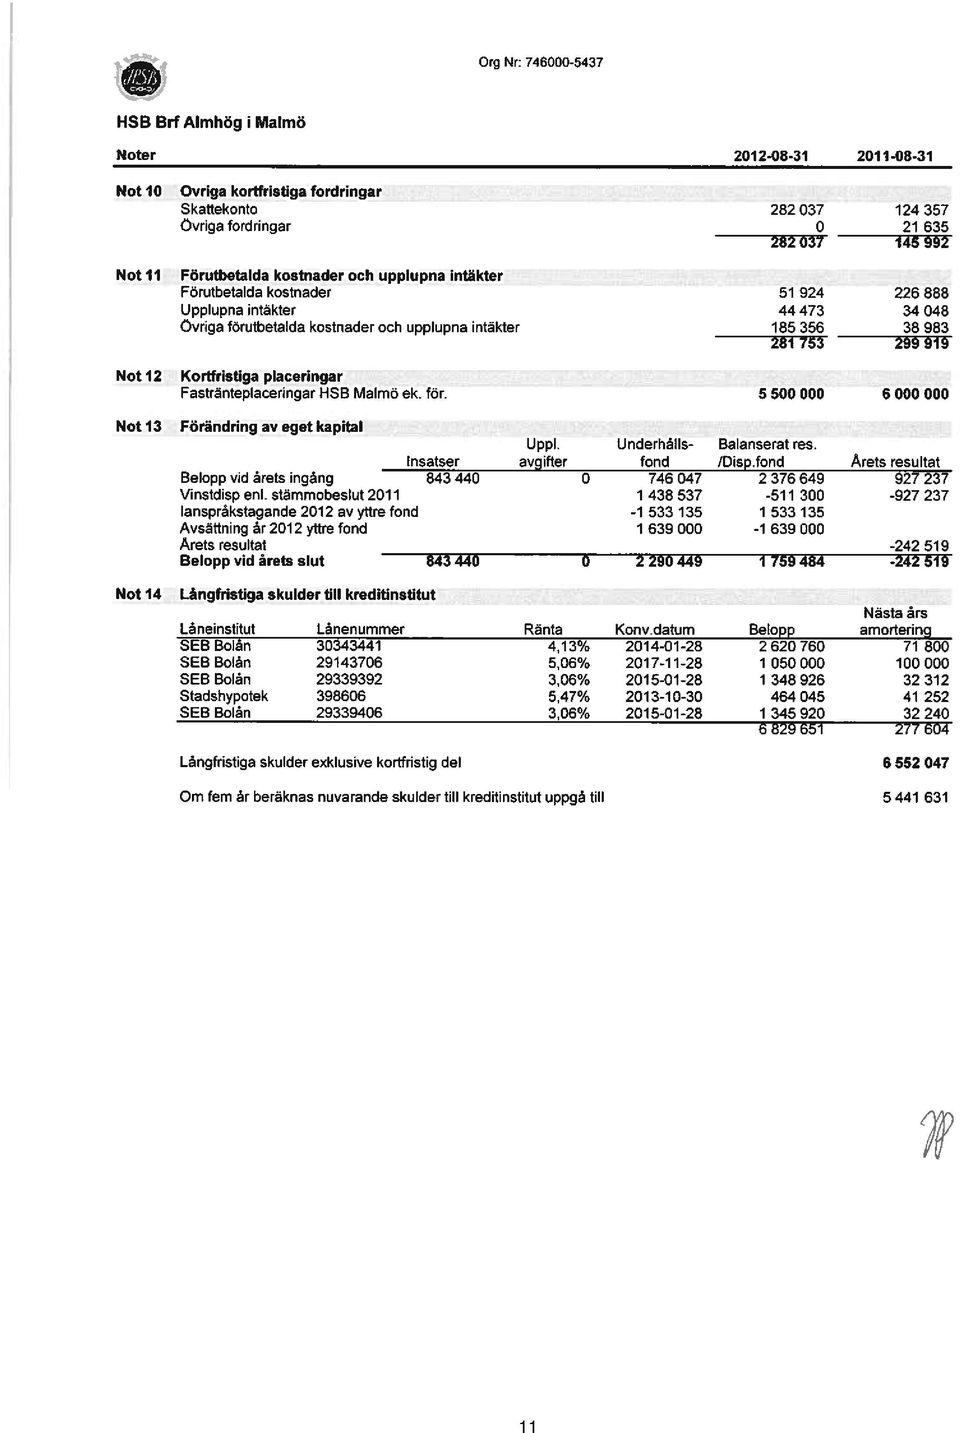 299919 Kortfristiga placeringar Fastränteplaceringar HSB Malmö ek. för. 5500 000 6000 000 Förändring av eget kapital UppI. tinderhålls- Balanserat res. Insatser avgifter fond /Disp.